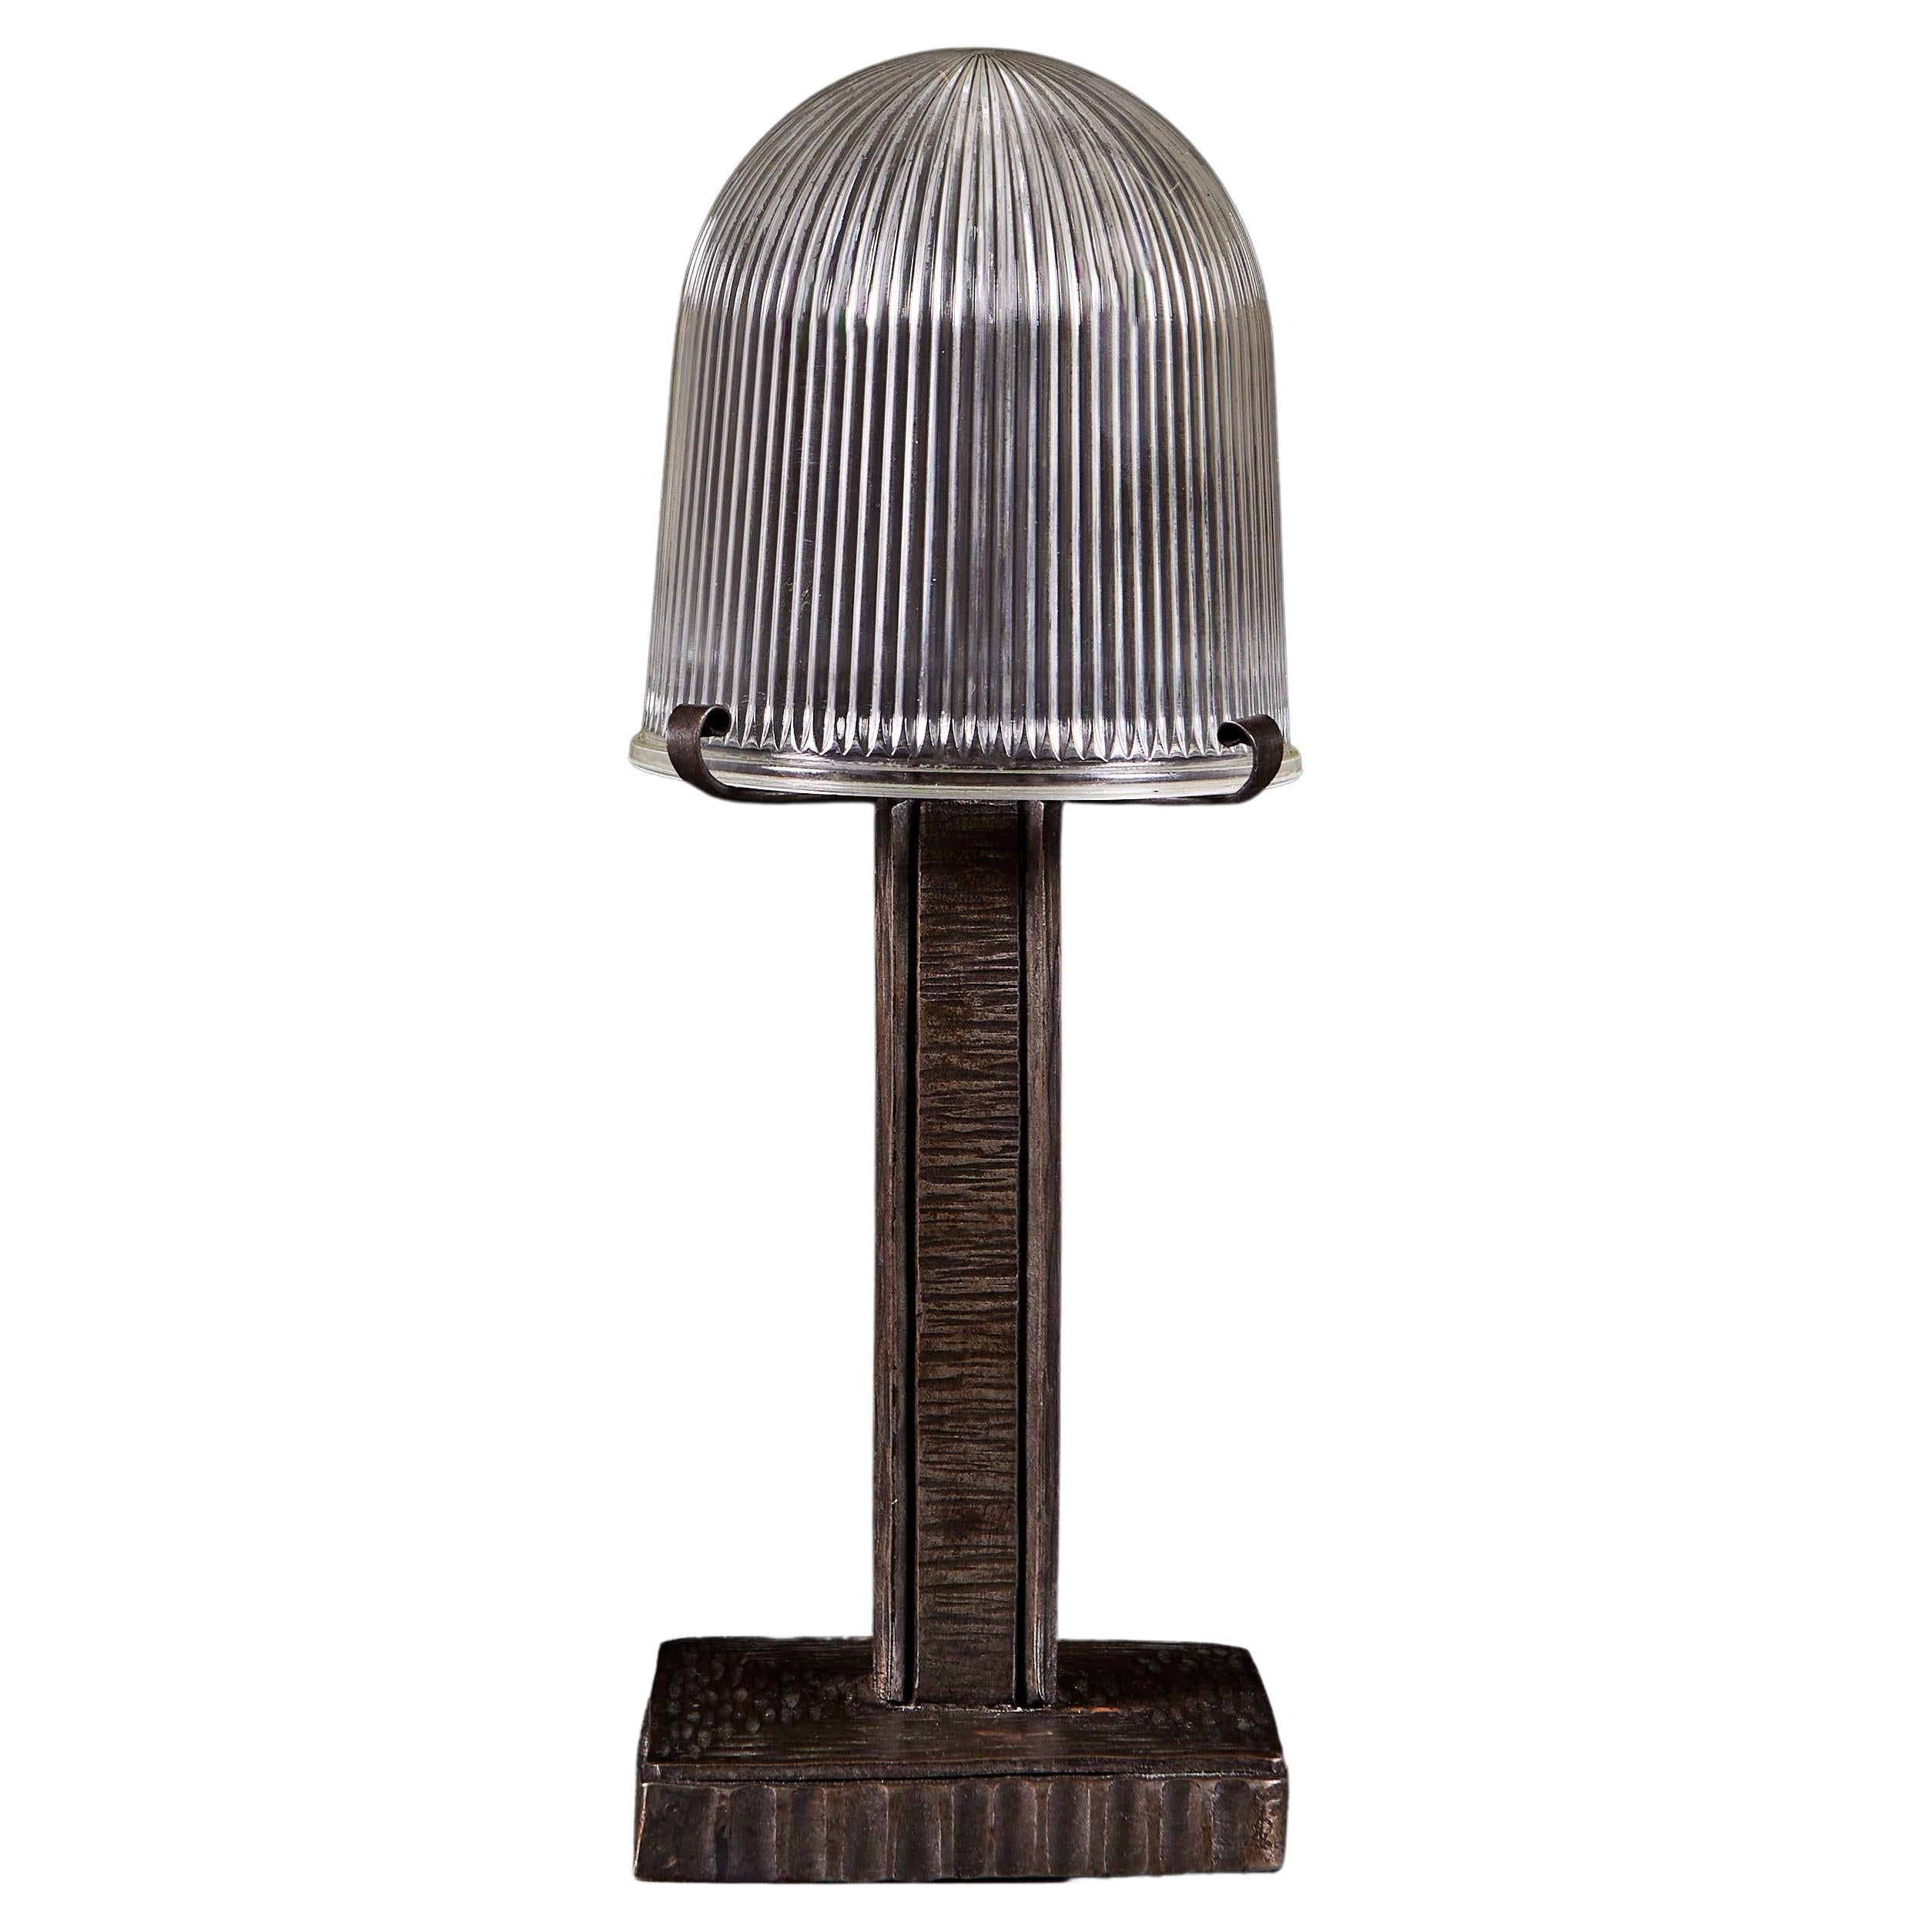 An Art Deco Desk Lamp